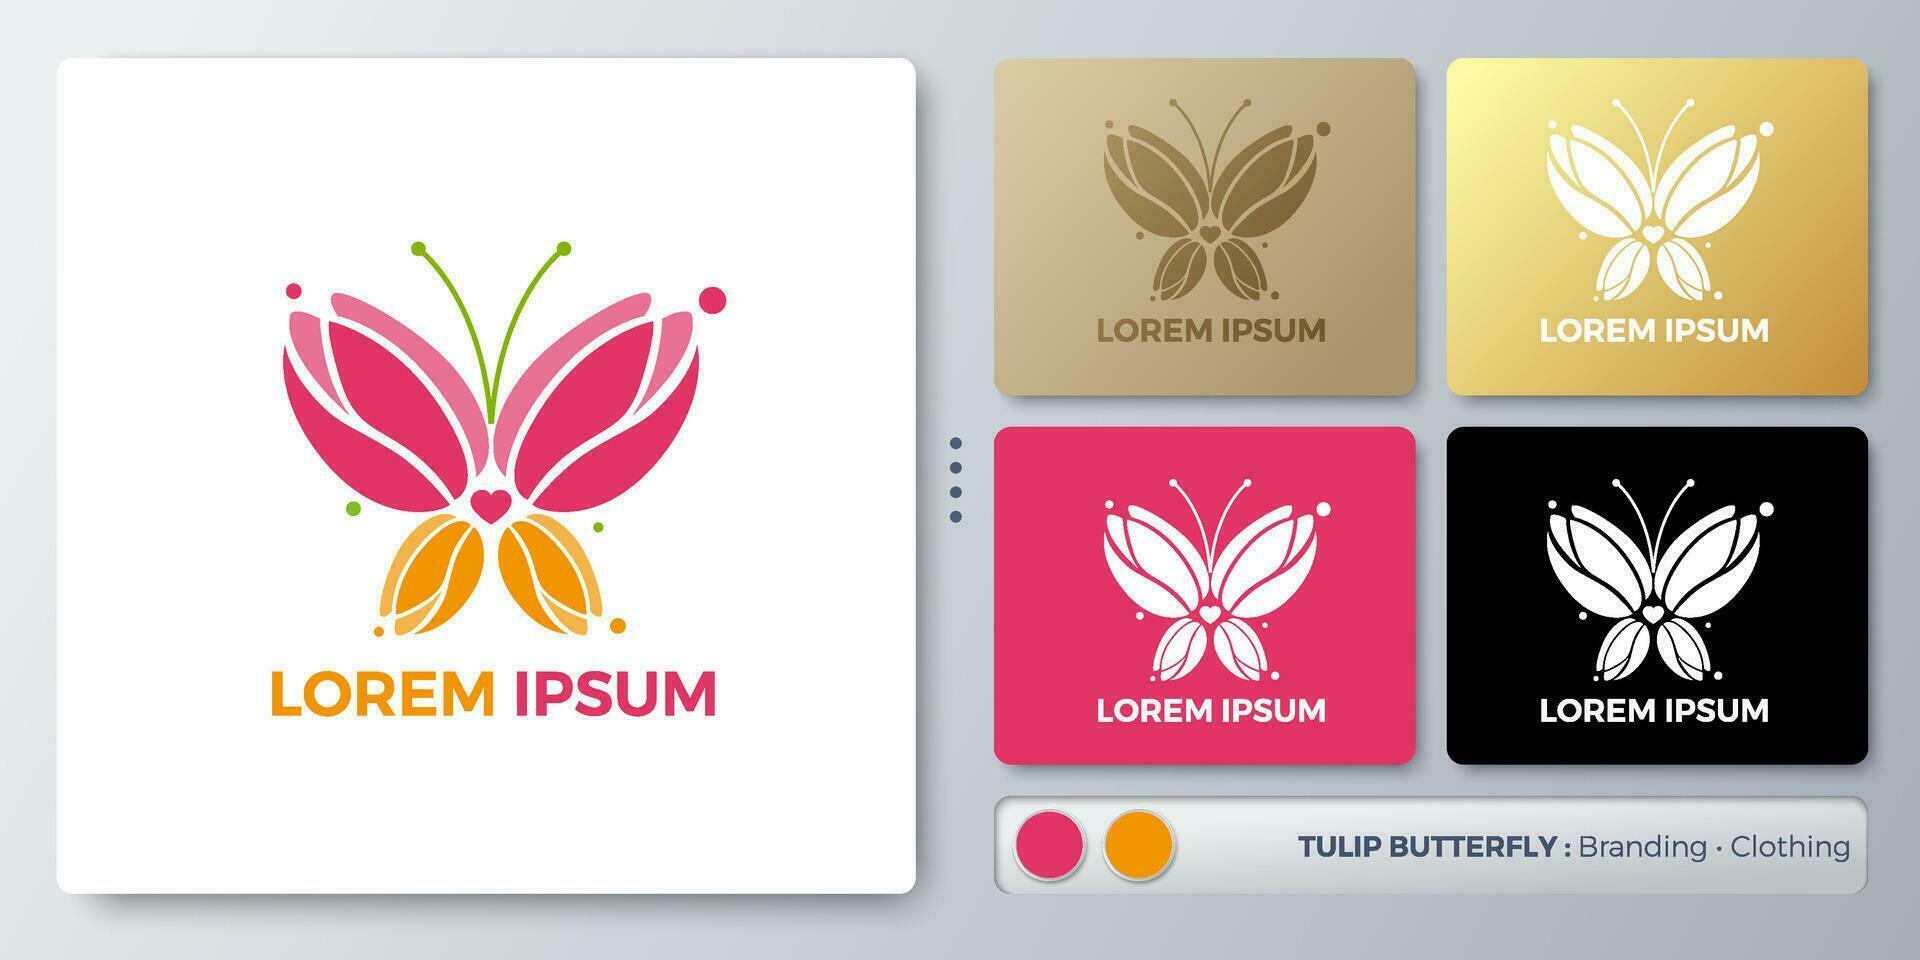 tulipán mariposa logo diseño. blanco nombre para insertar tu marca. diseñado con ejemplos para todas tipos de aplicaciones usted lata usado para compañía, identidad, cosmético, ambiente campaña, marca. vector